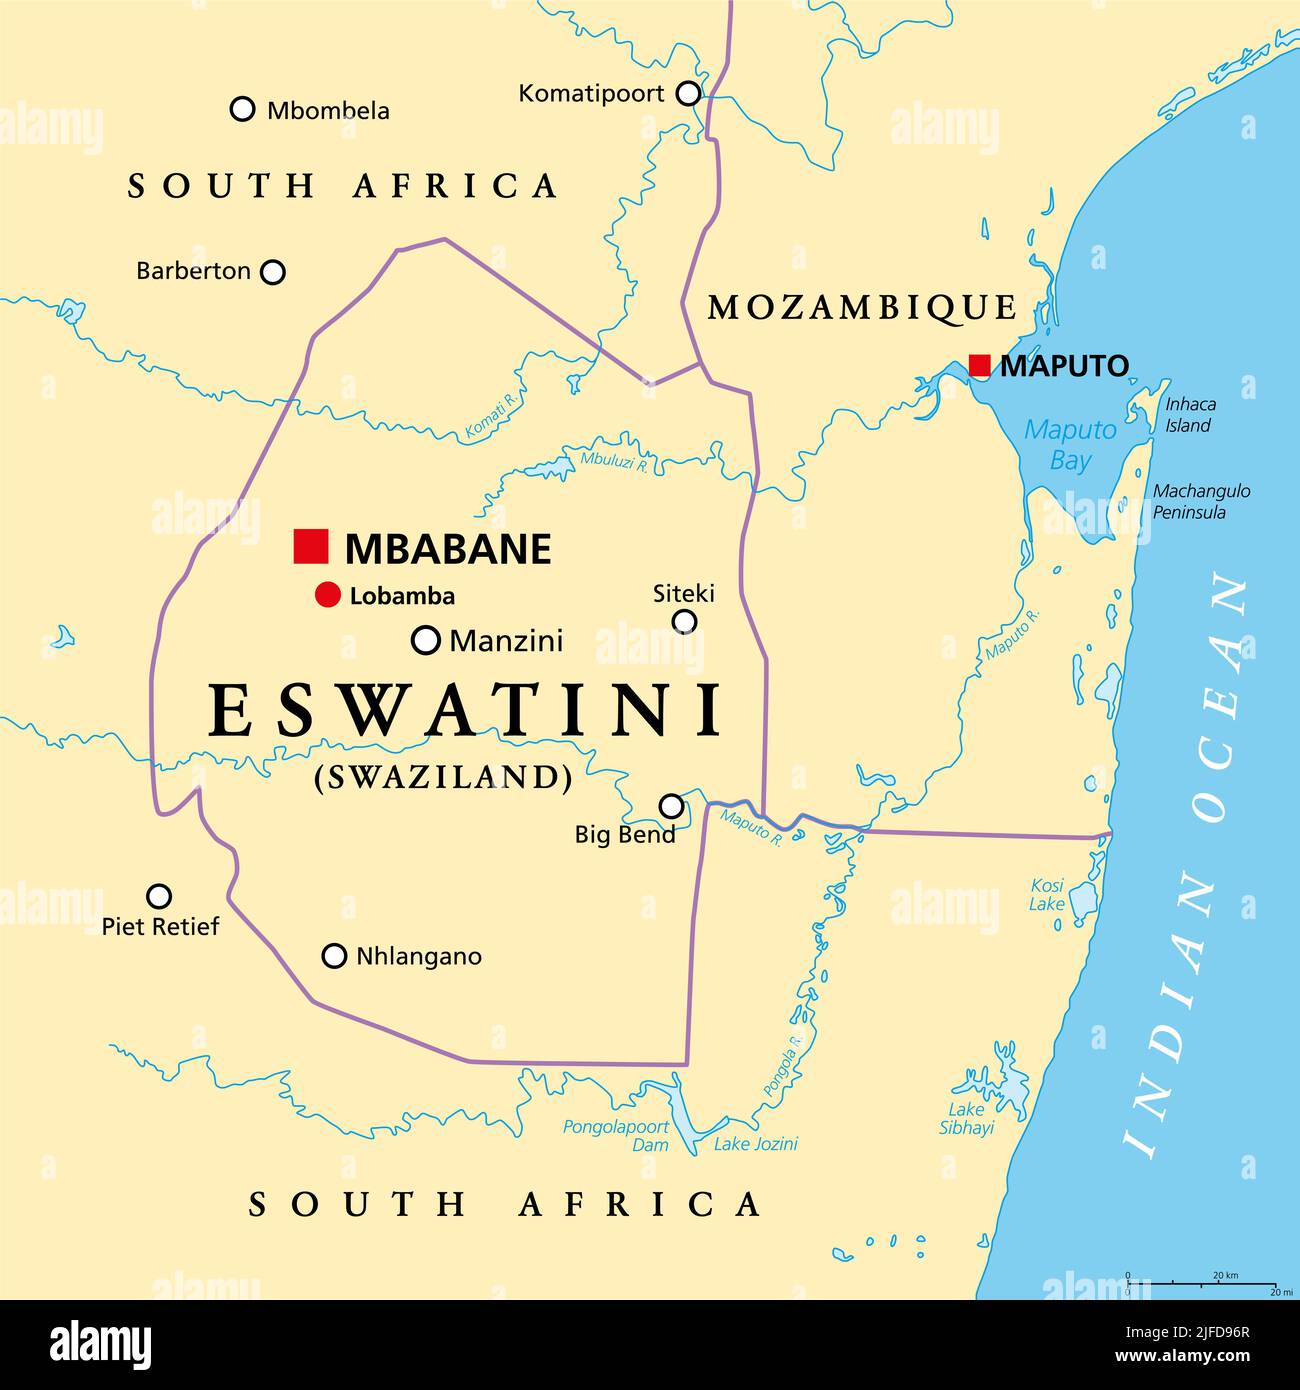 Eswatini, precedentemente chiamato Swaziland, mappa politica, con le capitali Mbabane e Lobamba. Paese senza sbocco sul mare in Africa australe. Foto Stock